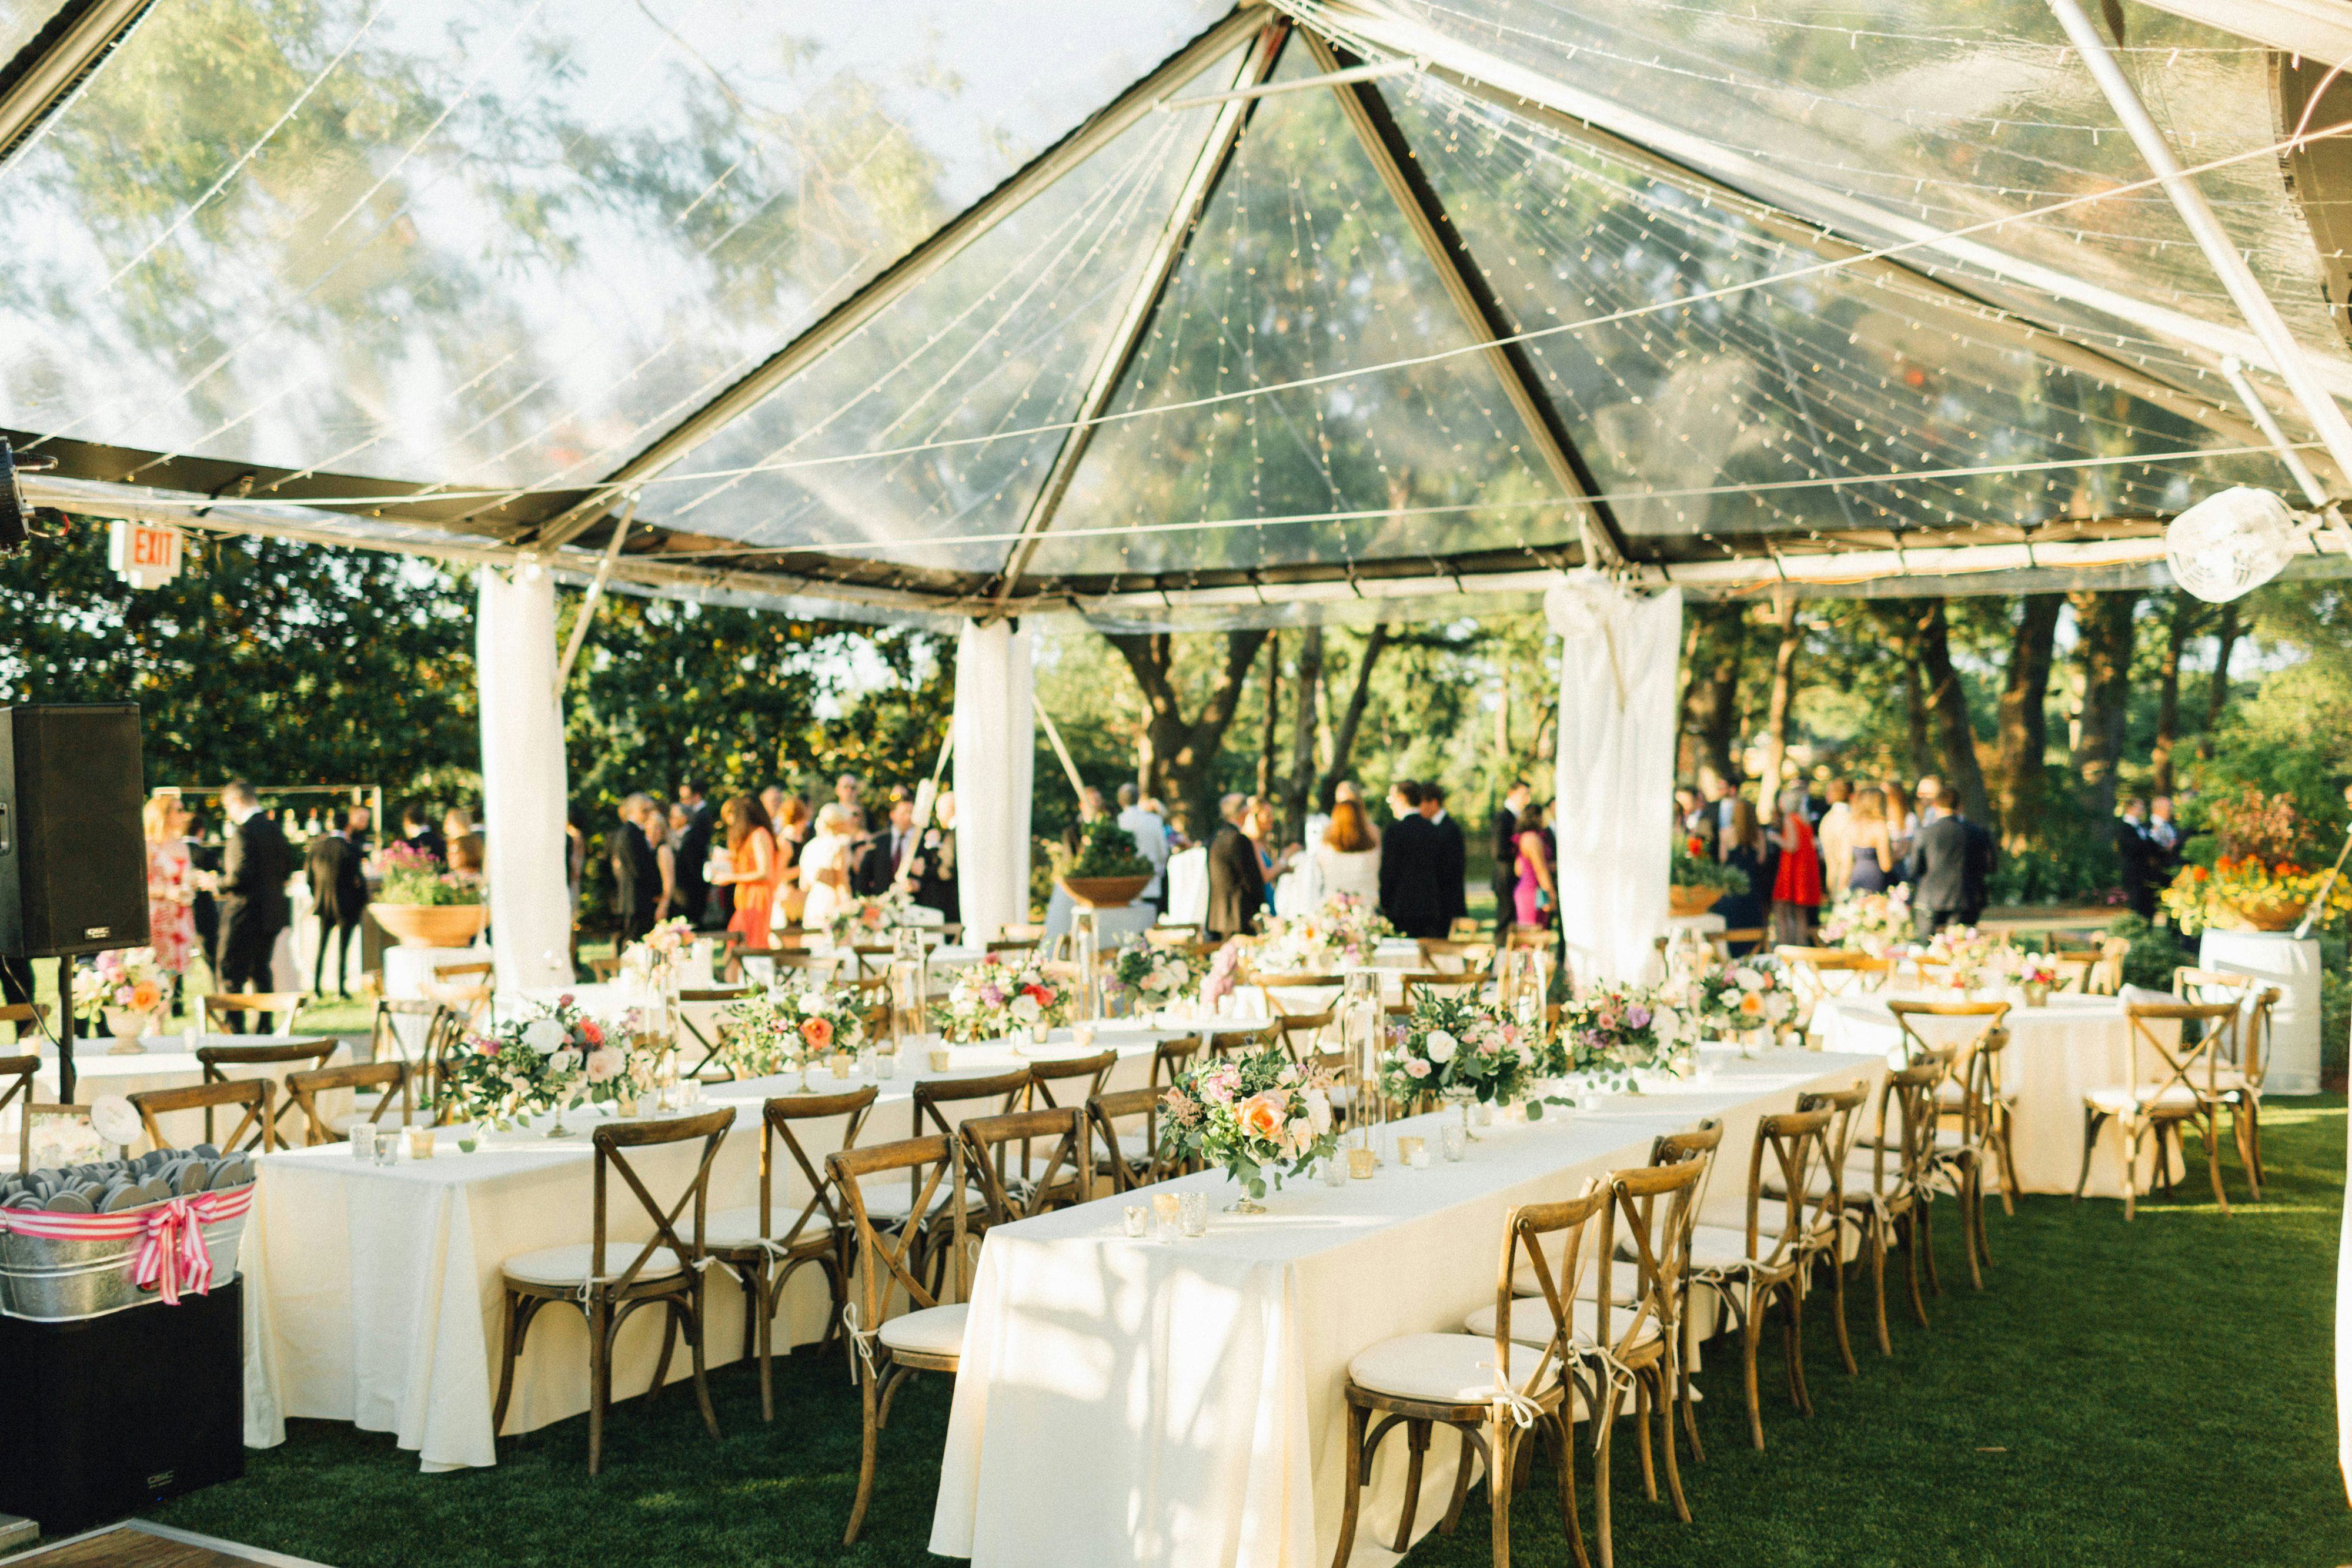  Weddings  at The Arboretum Dallas  Wedding  Venues  Garden  